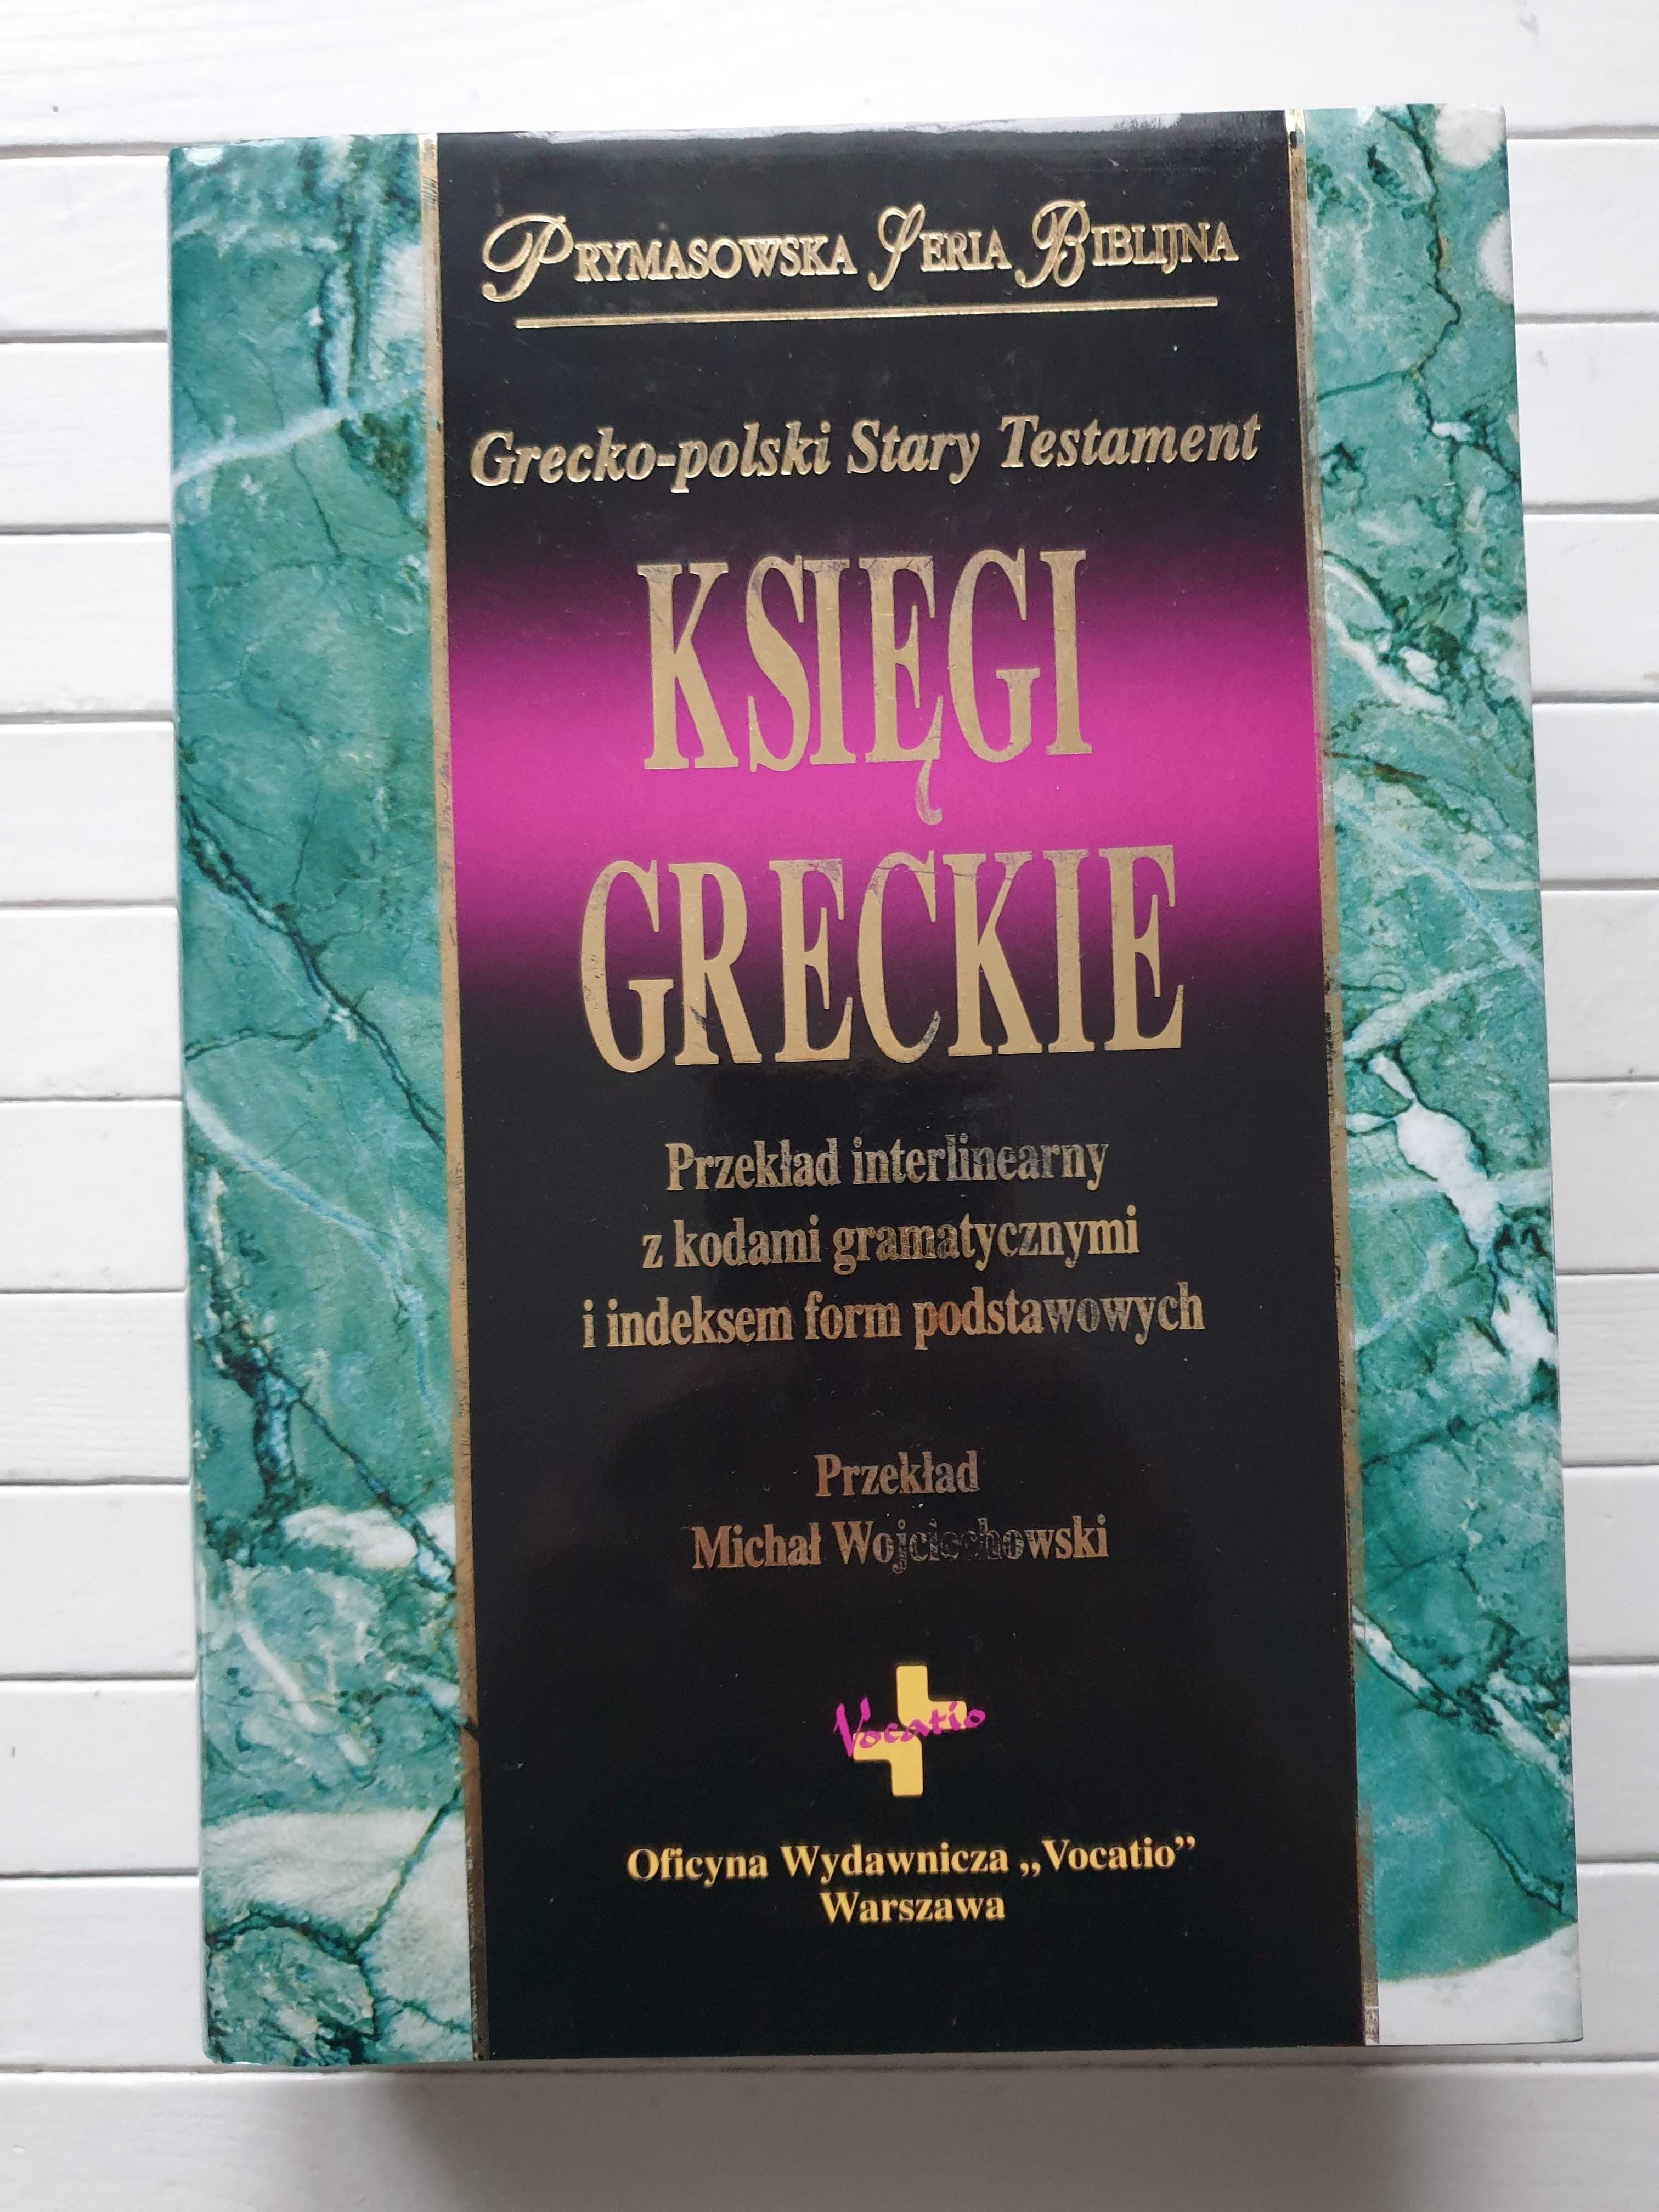 Grecko-polski Stary Testament. Księgi greckie Michał Wojciechowski